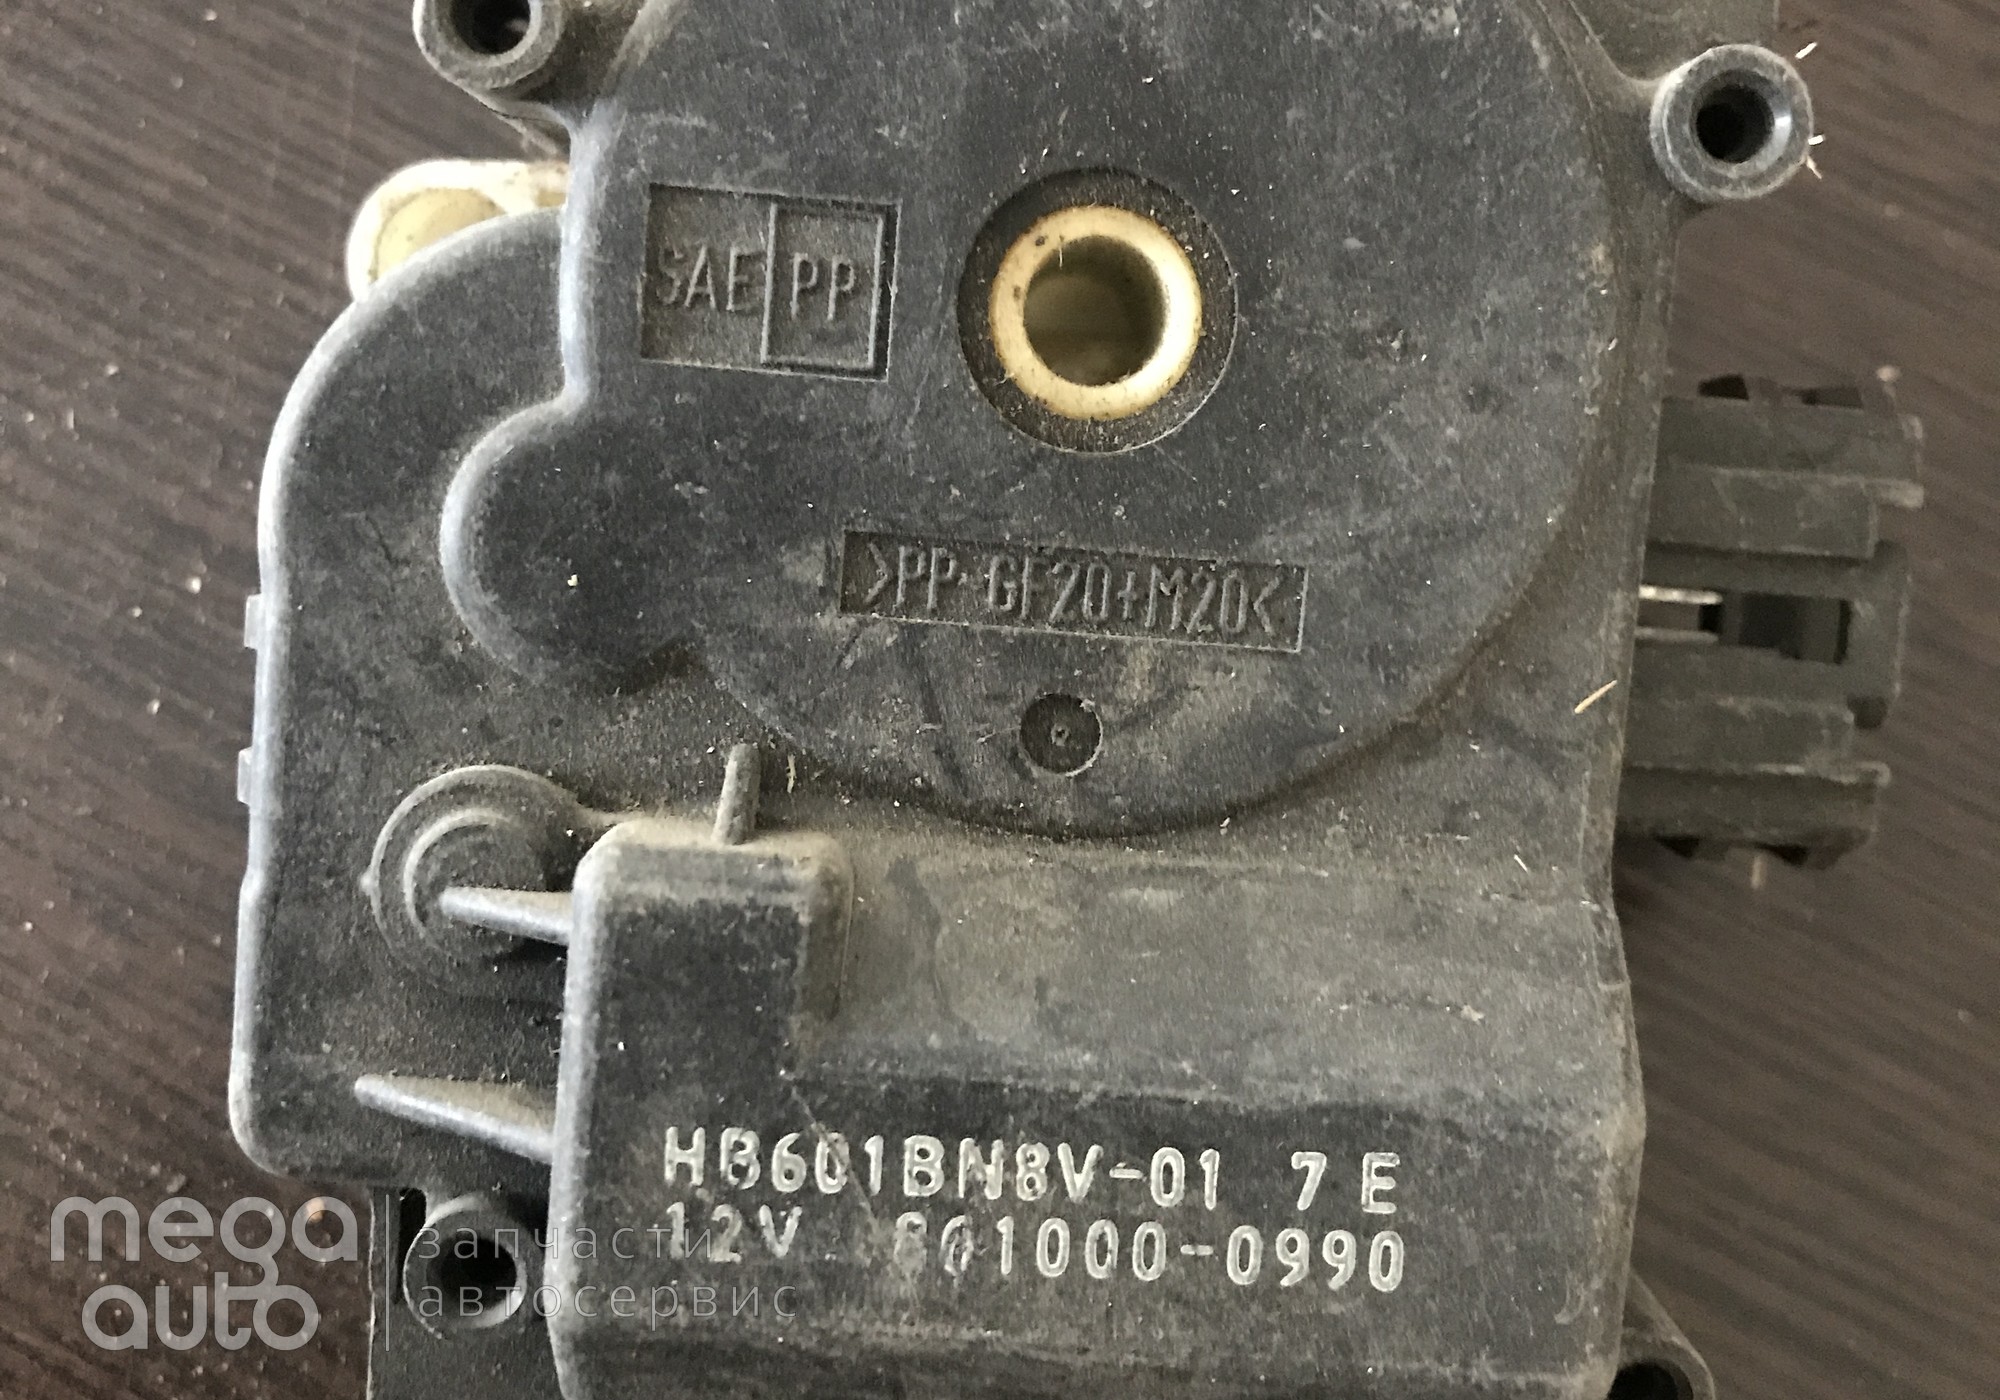 8610000990 Моторчик отопителя мазда 3, мазда 5 для Mazda 5